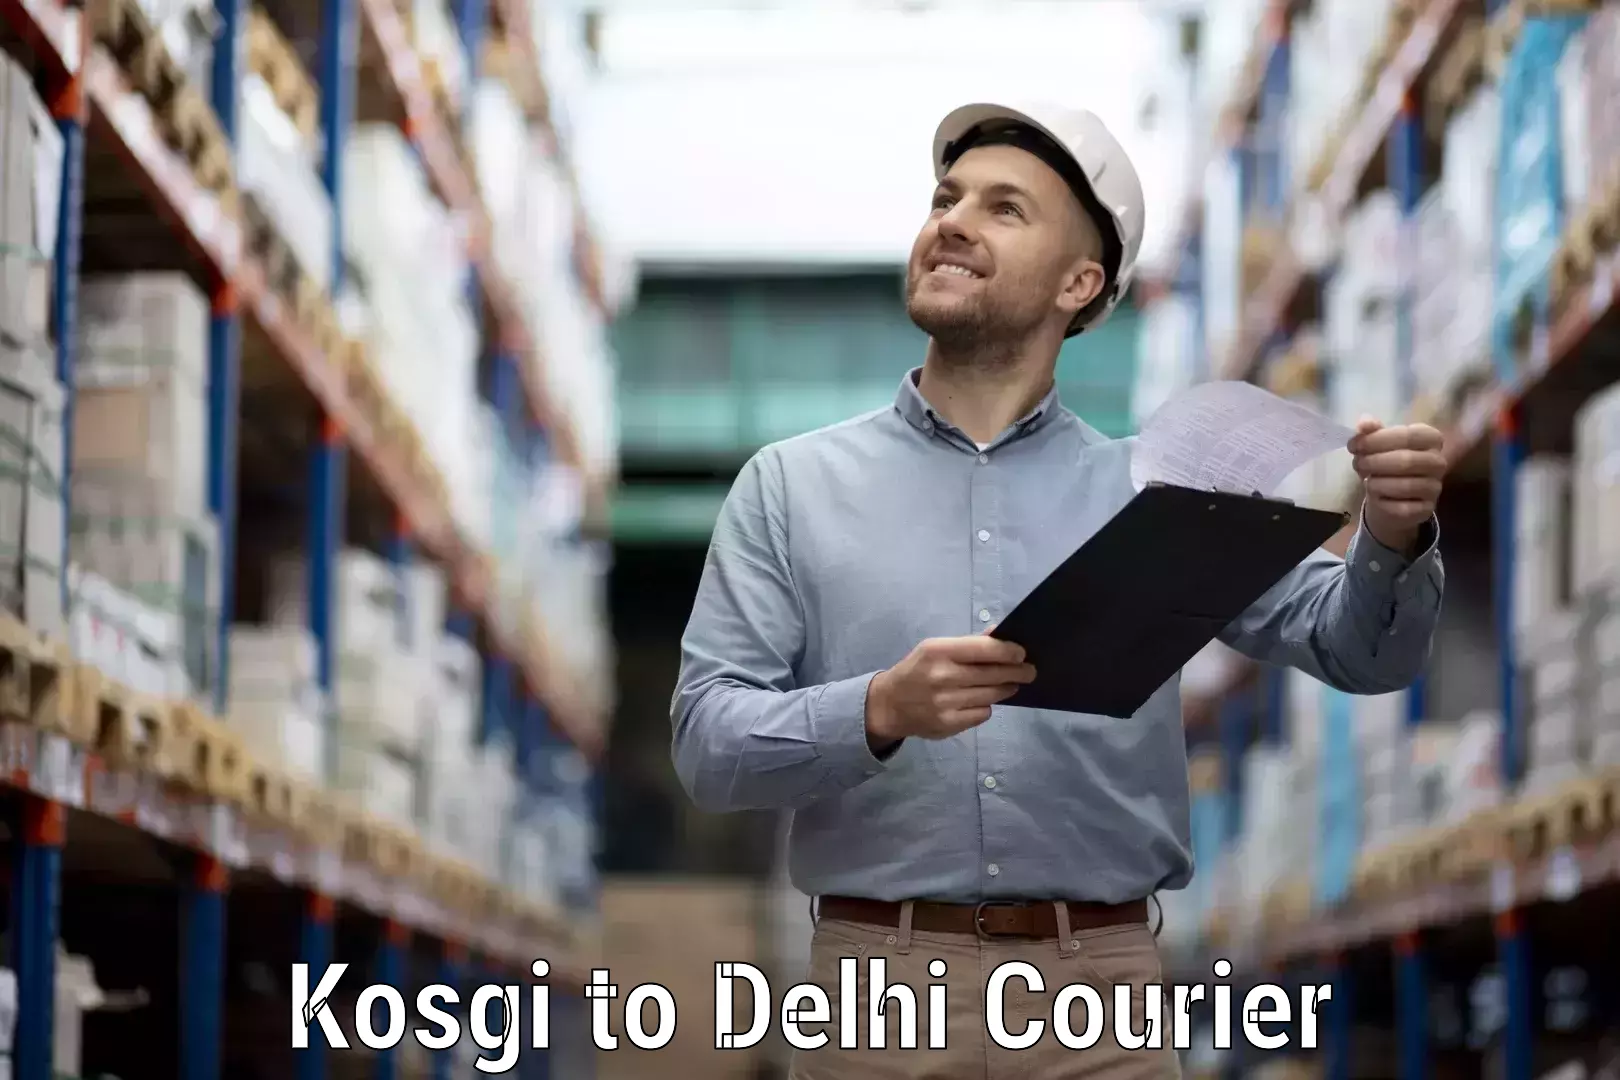 Next-day freight services in Kosgi to Delhi